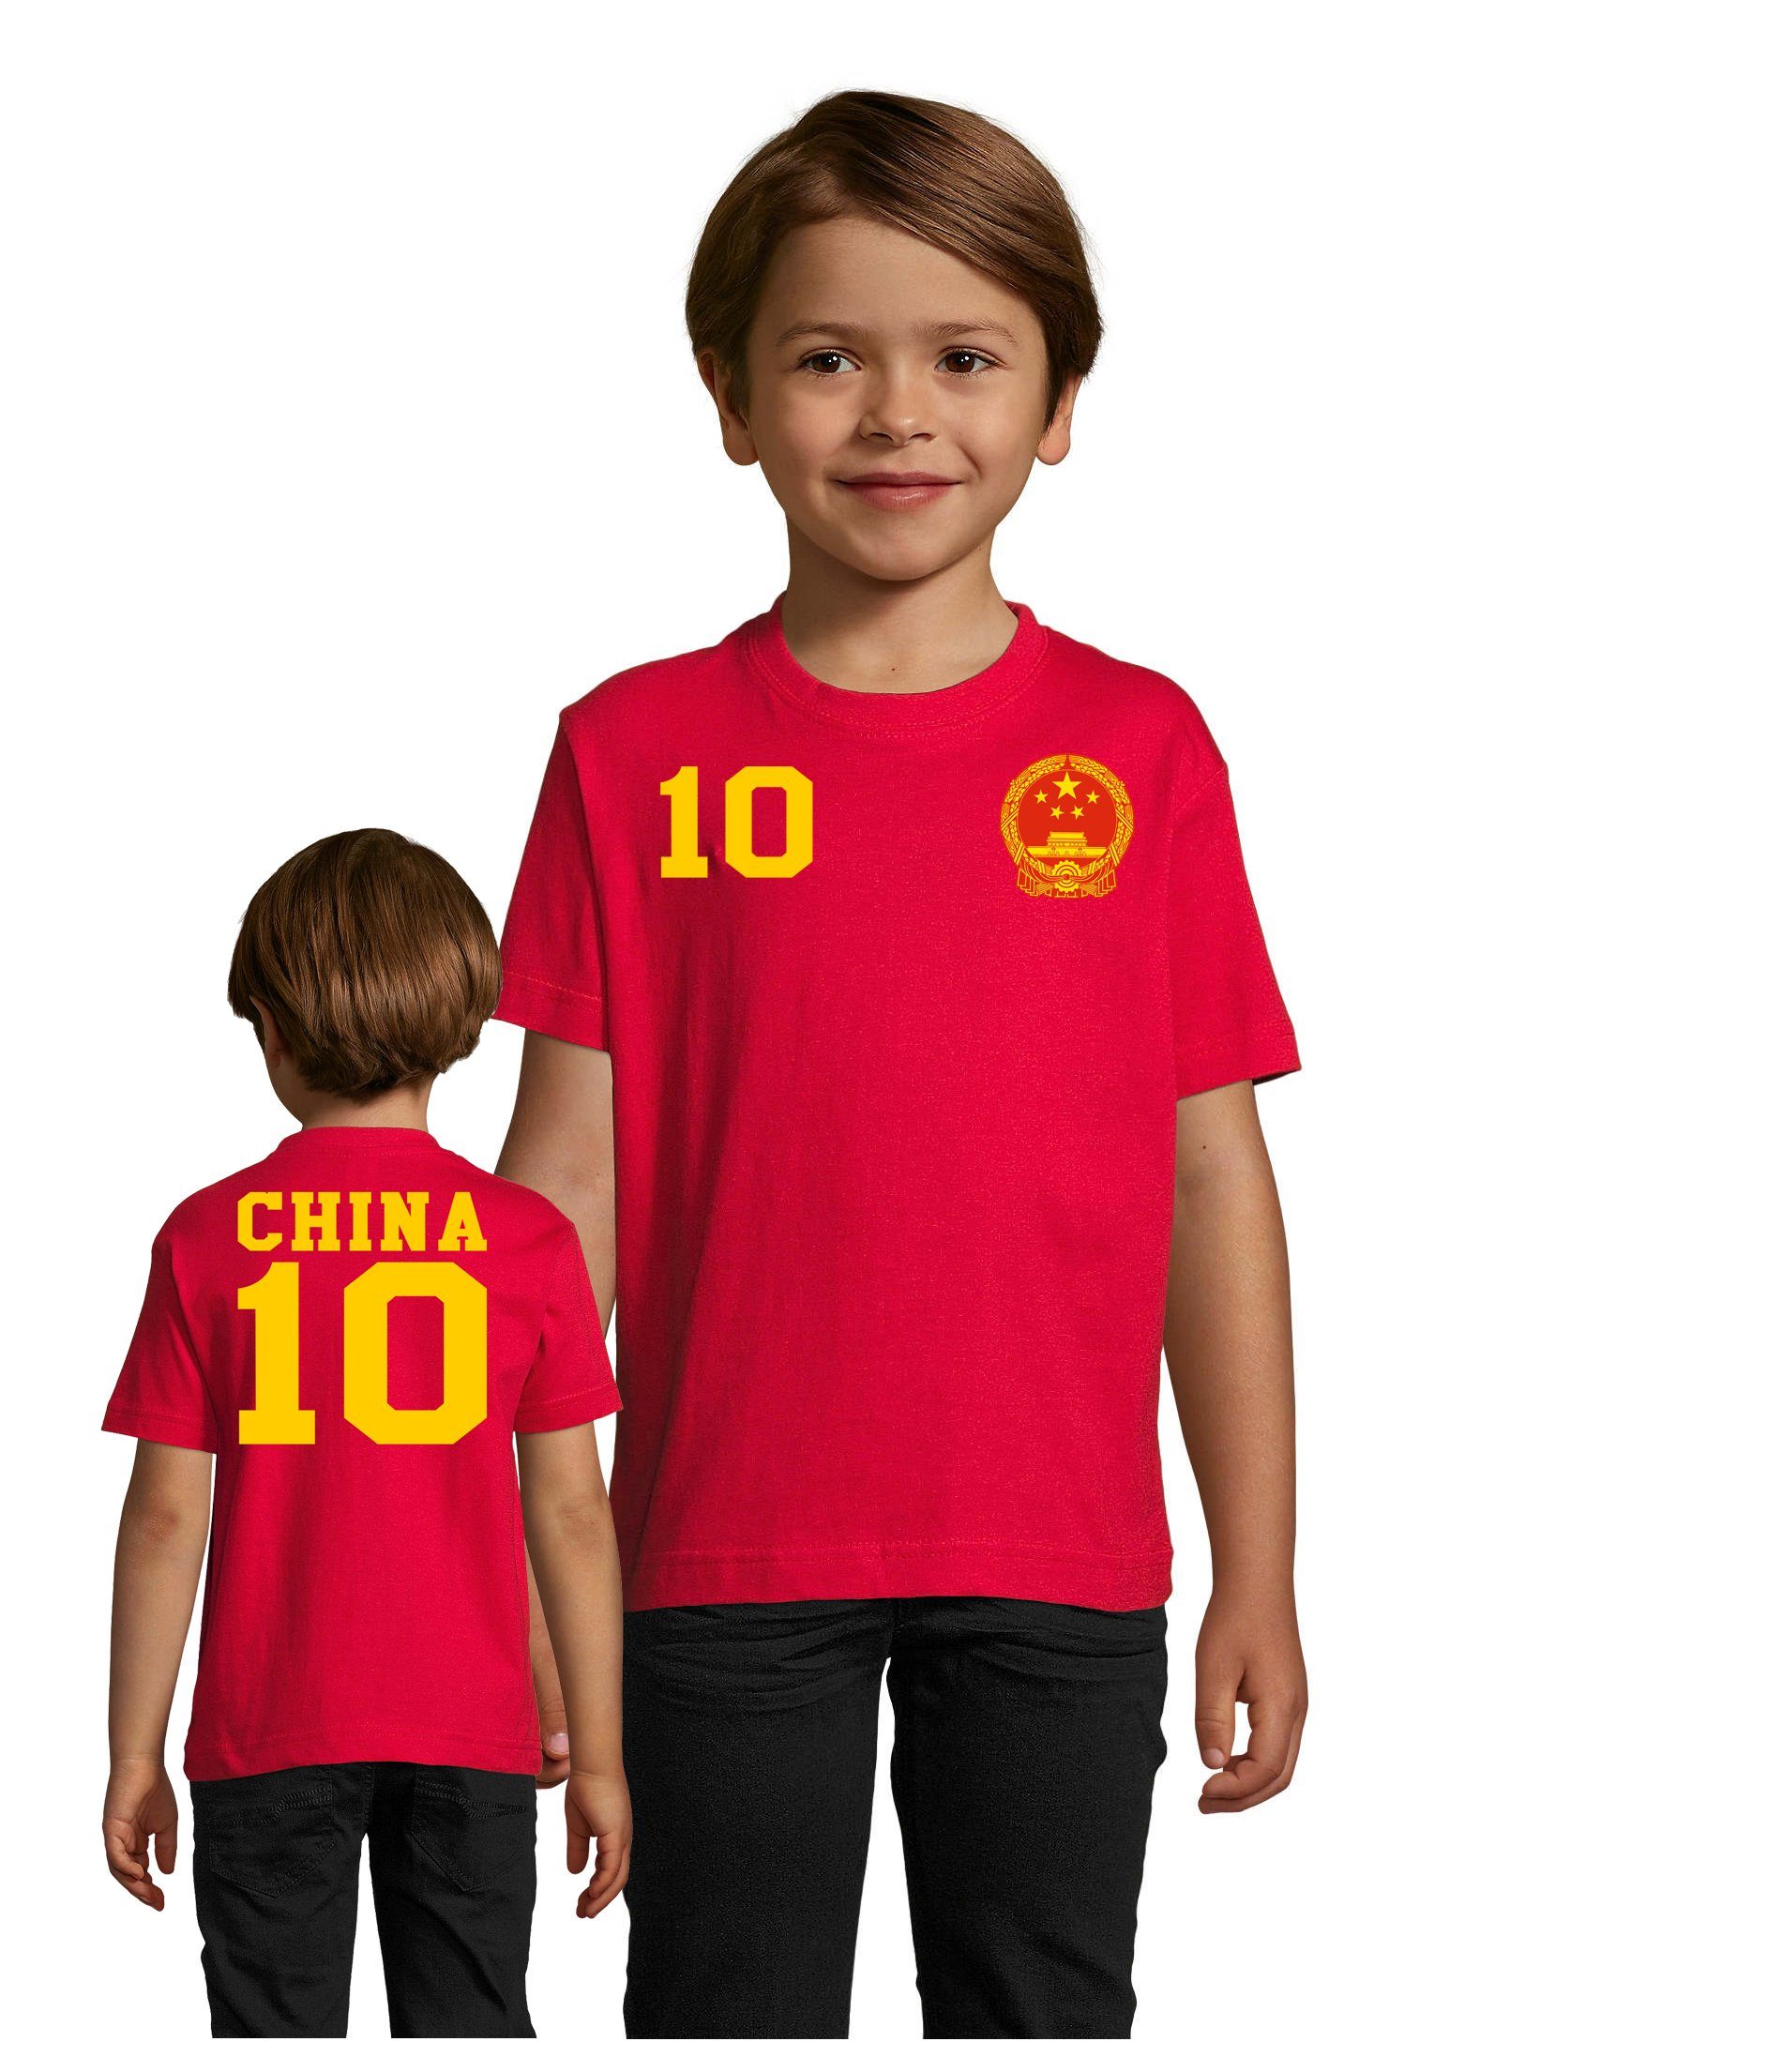 Blondie & Brownie T-Shirt Kinder,China Asien Sport Trikot Fußball Weltmeister Meister WM